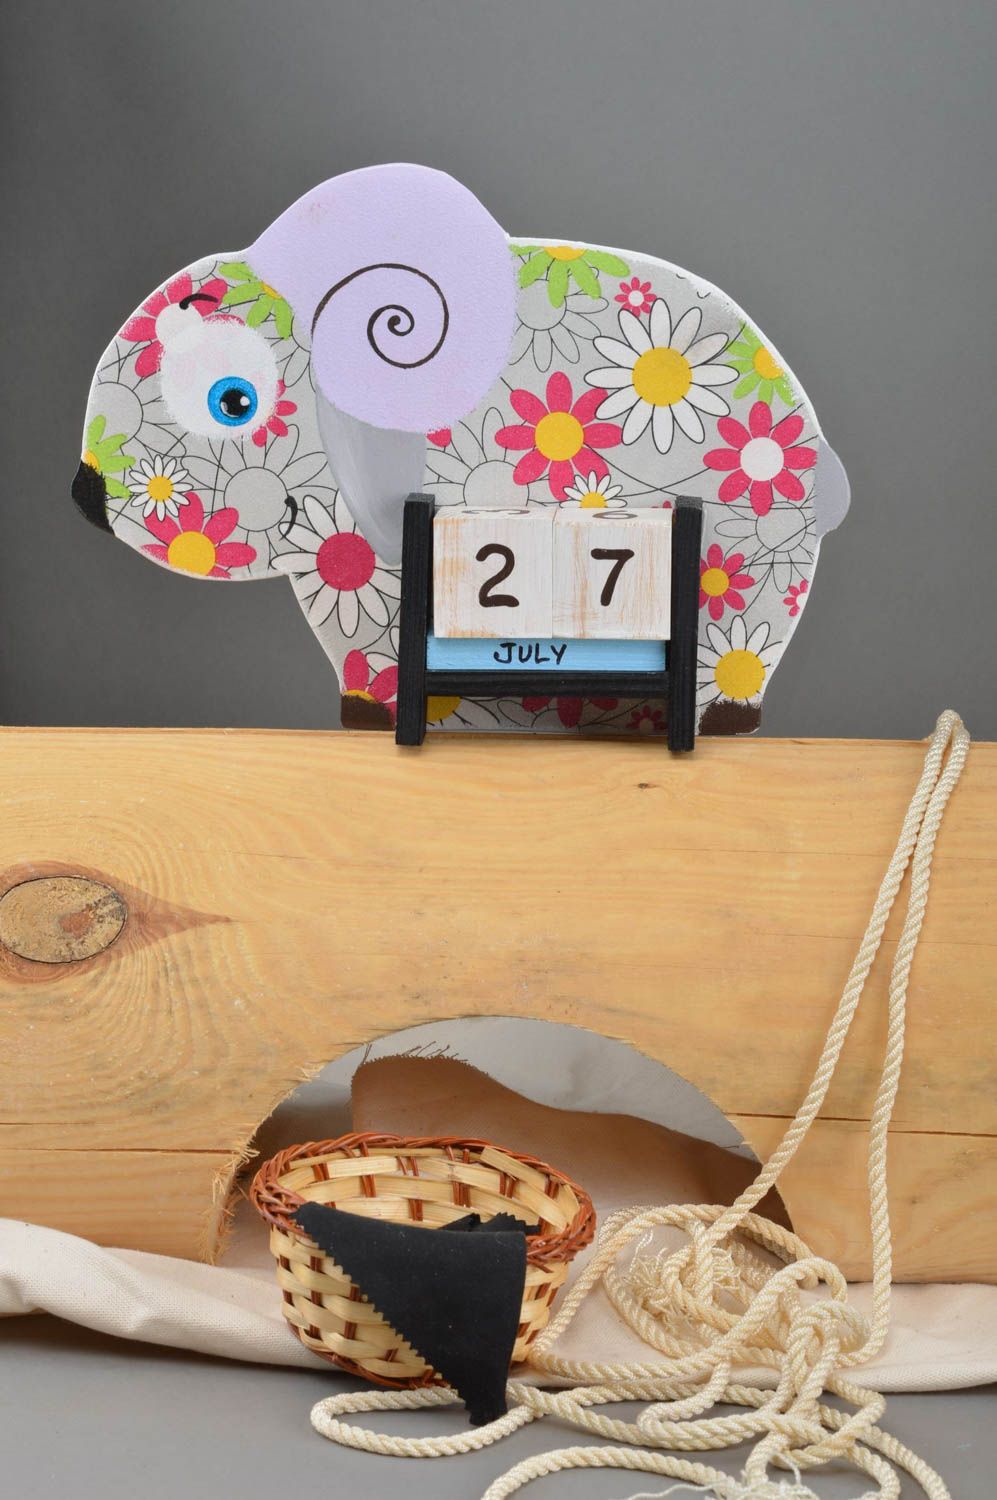 Детский календарь в виде барашка из фанеры декупаж в ромашках ручной работы фото 1